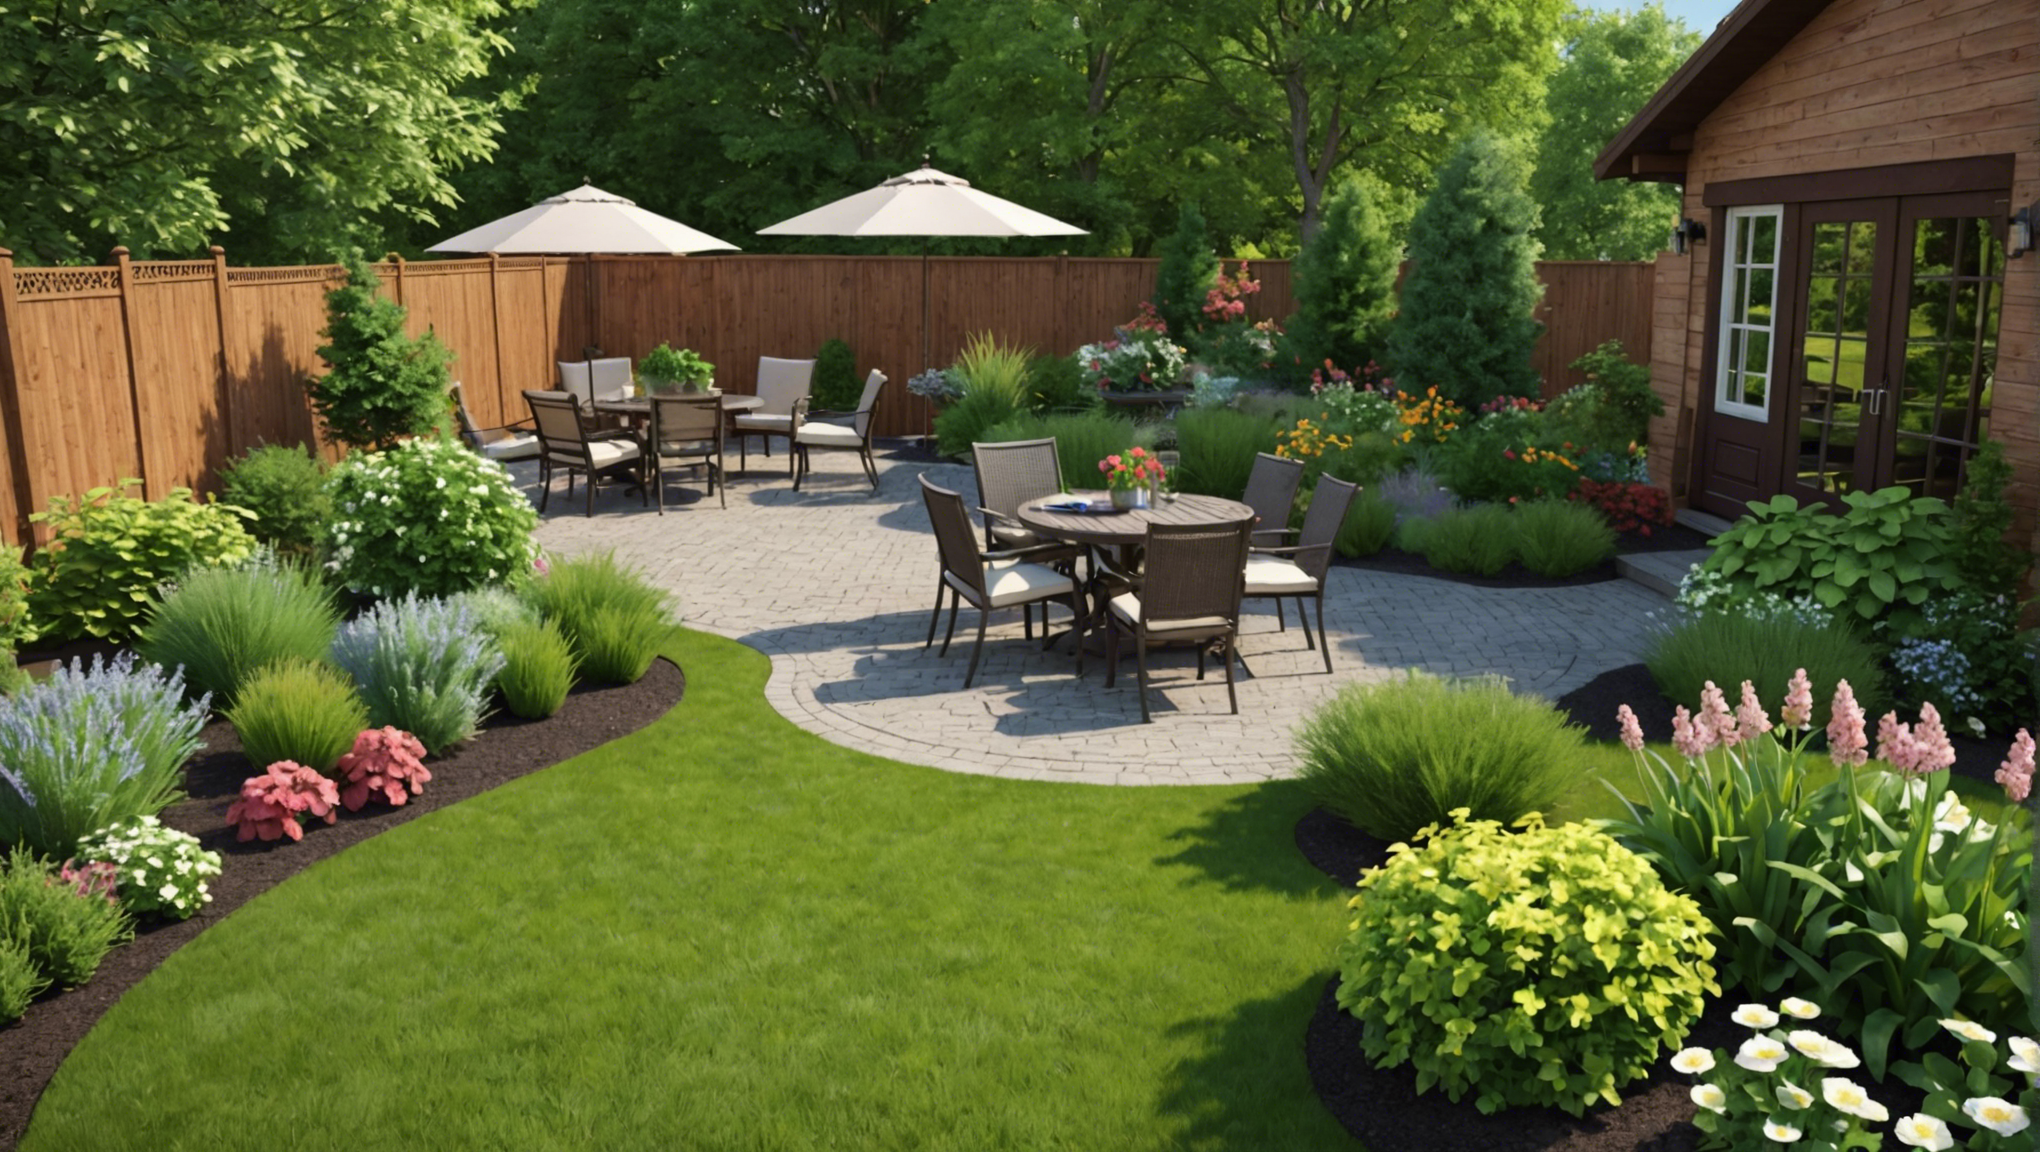 découvrez des idées pour aménager votre jardin de façon à la fois créative et fonctionnelle et profitez pleinement de votre espace extérieur.